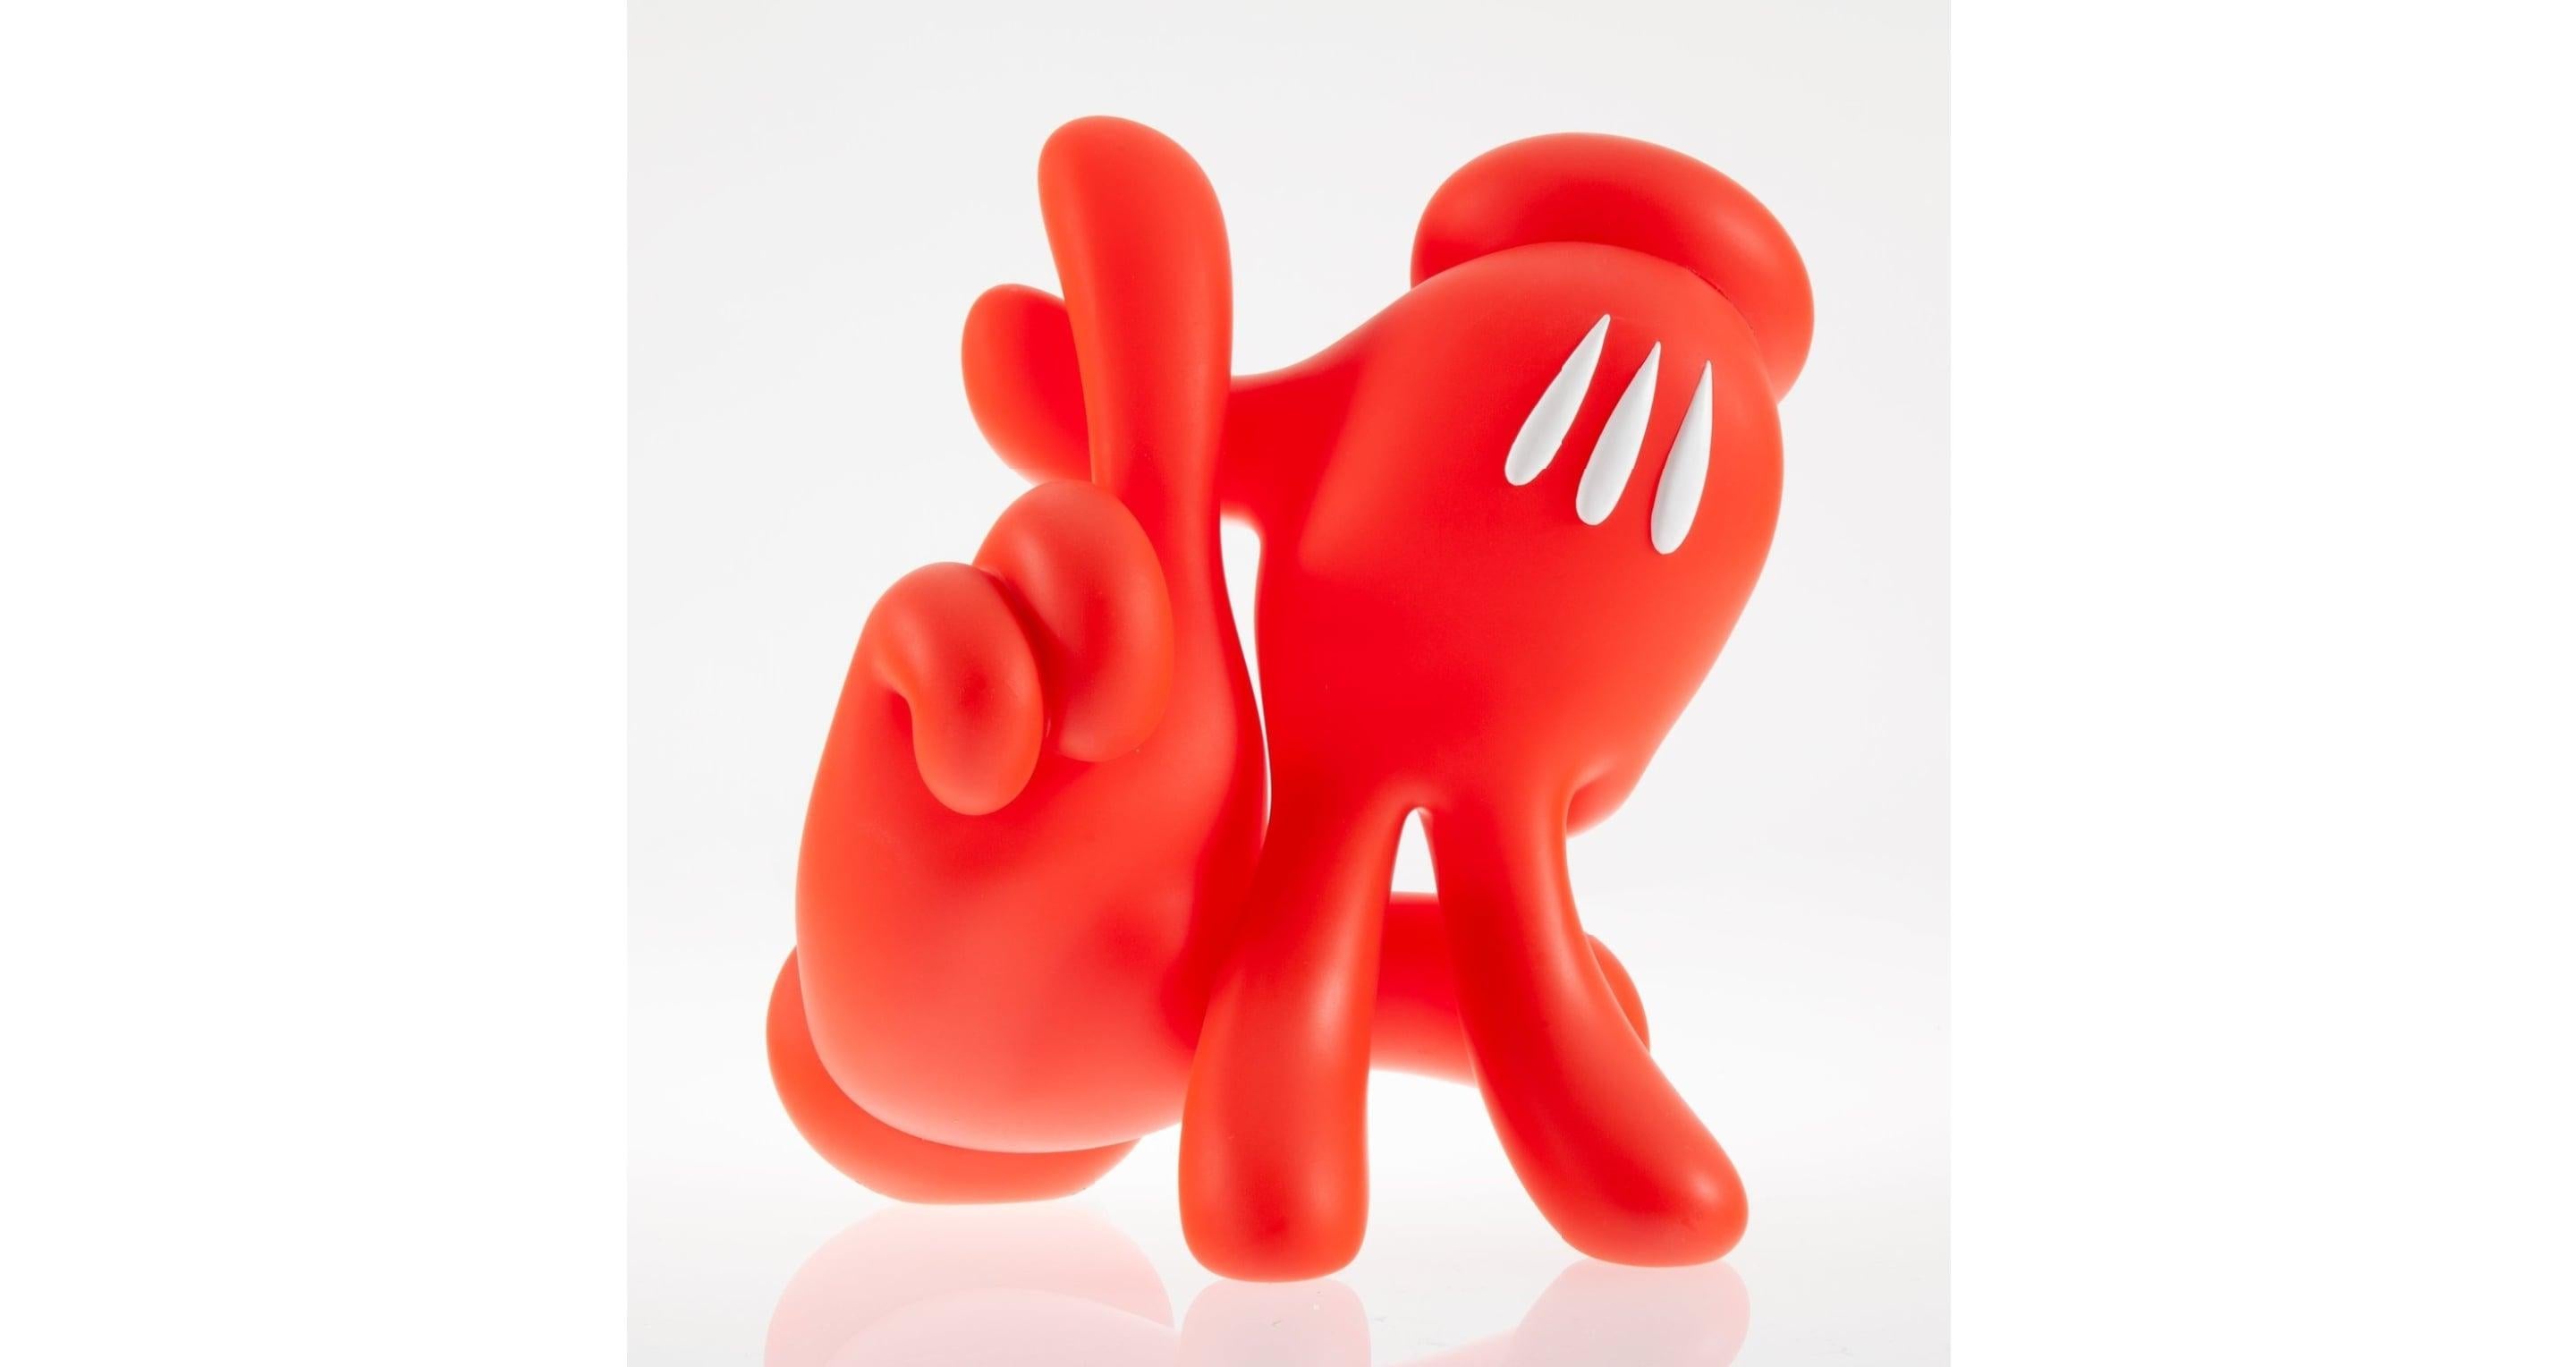 OG Slick Figurative Sculpture - LA Hands (Red Handed)